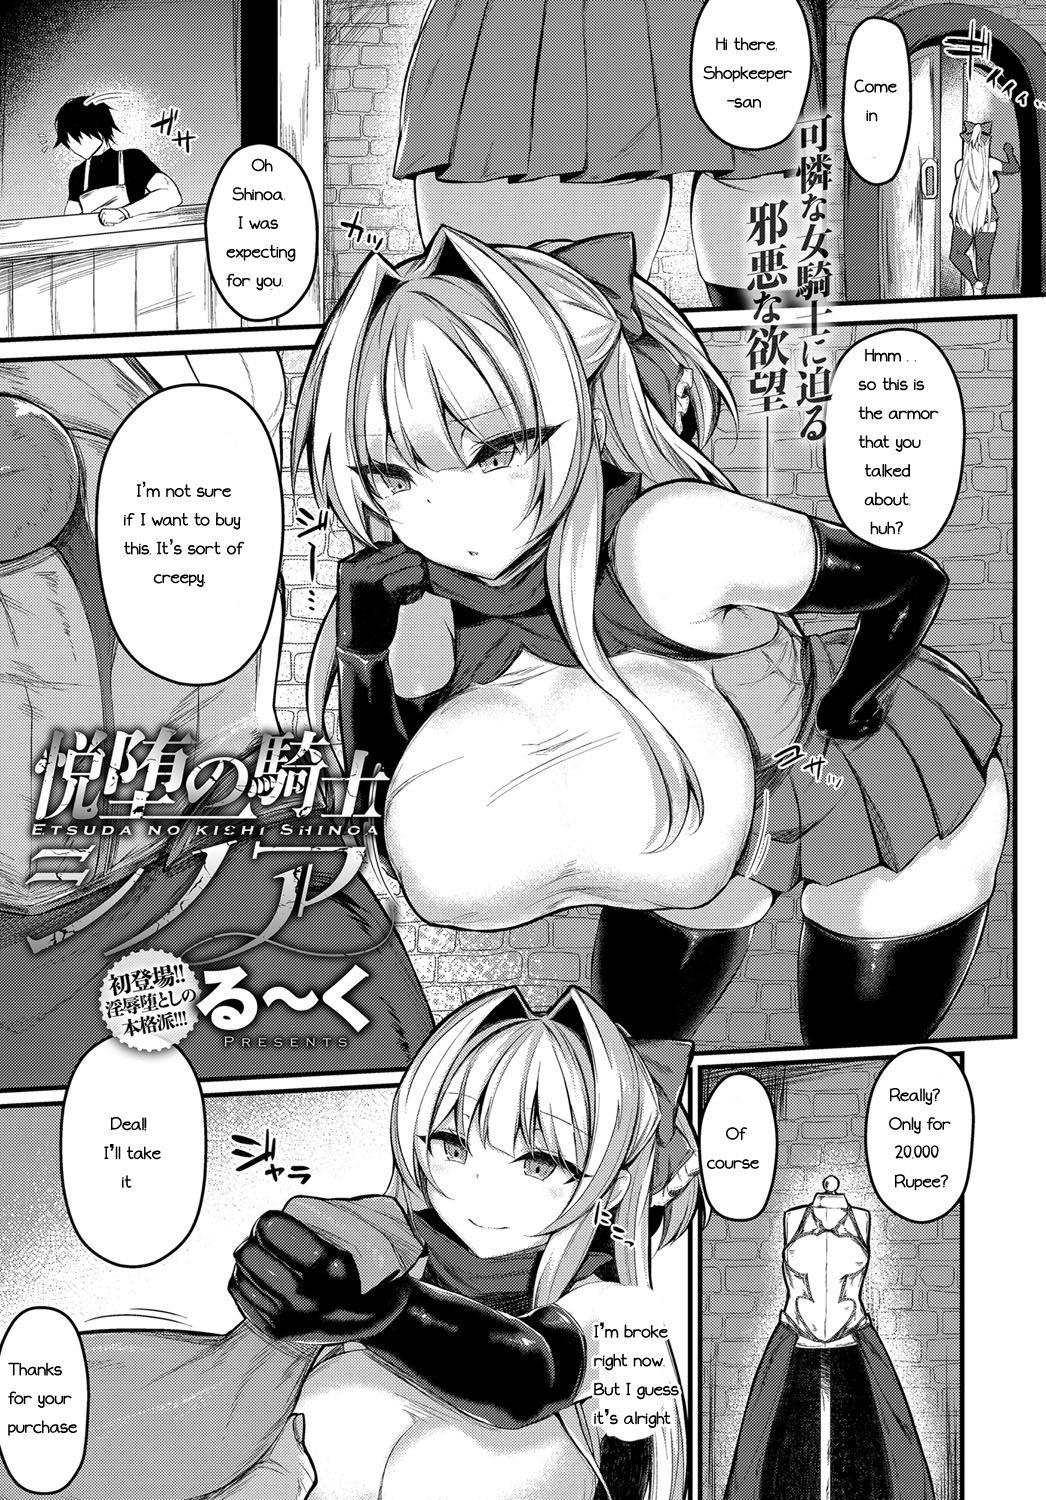 Buttfucking Etsuda no Kishi Shinoa Cogiendo - Page 1